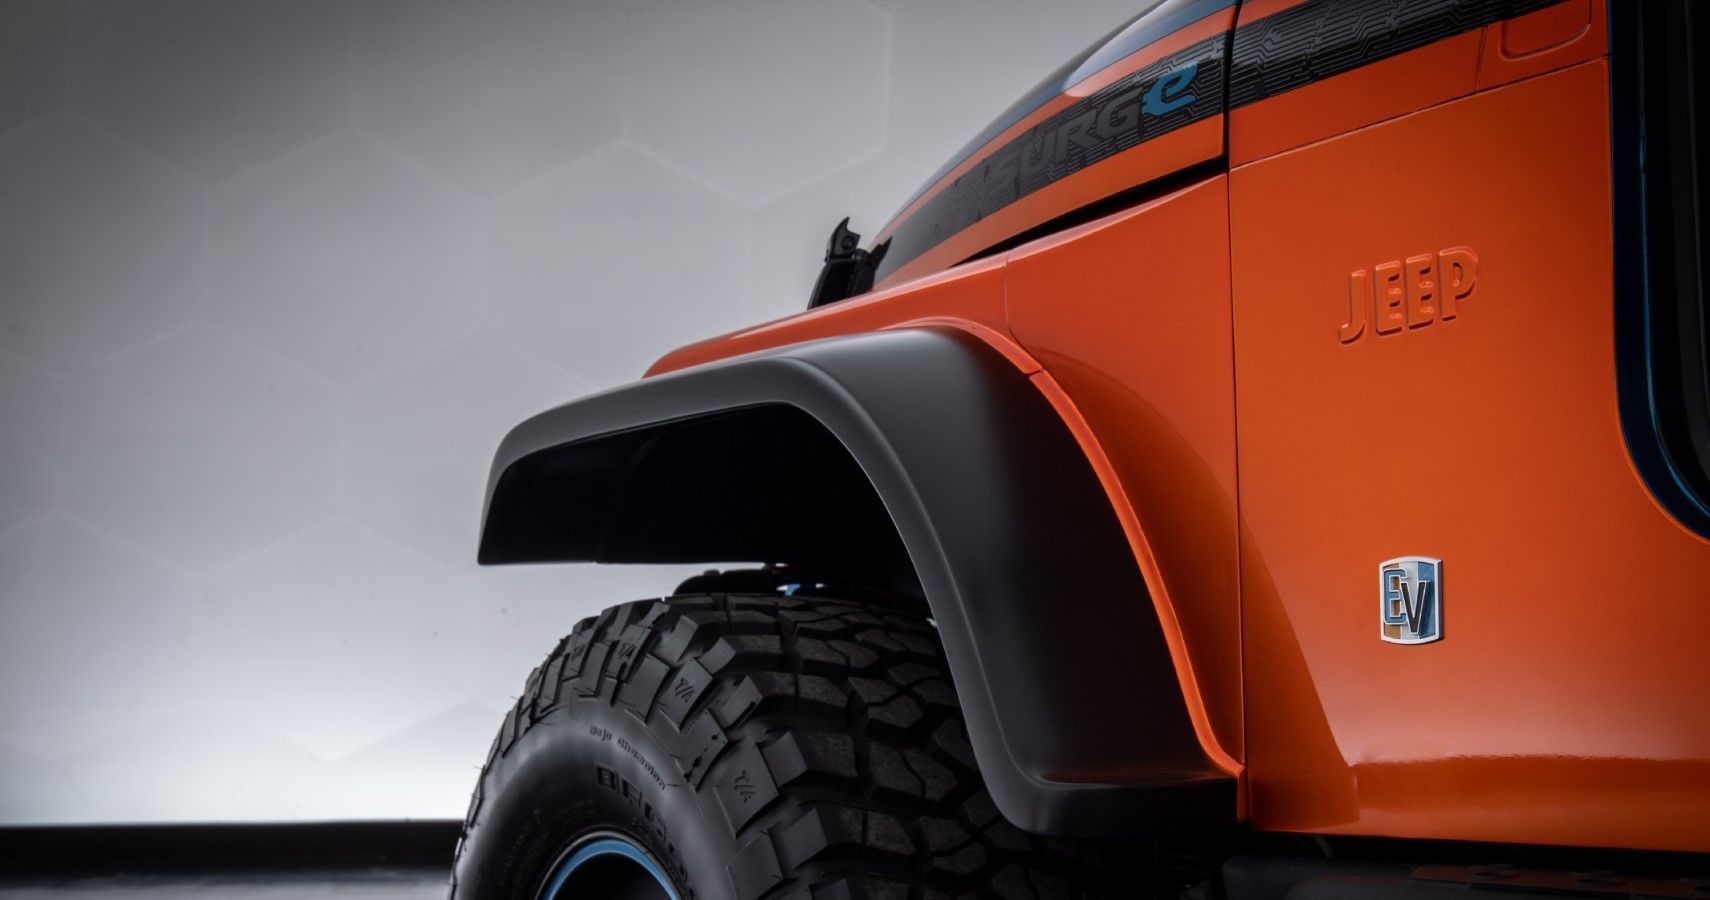 Jeep CJ Surge Concept front fender close-up view